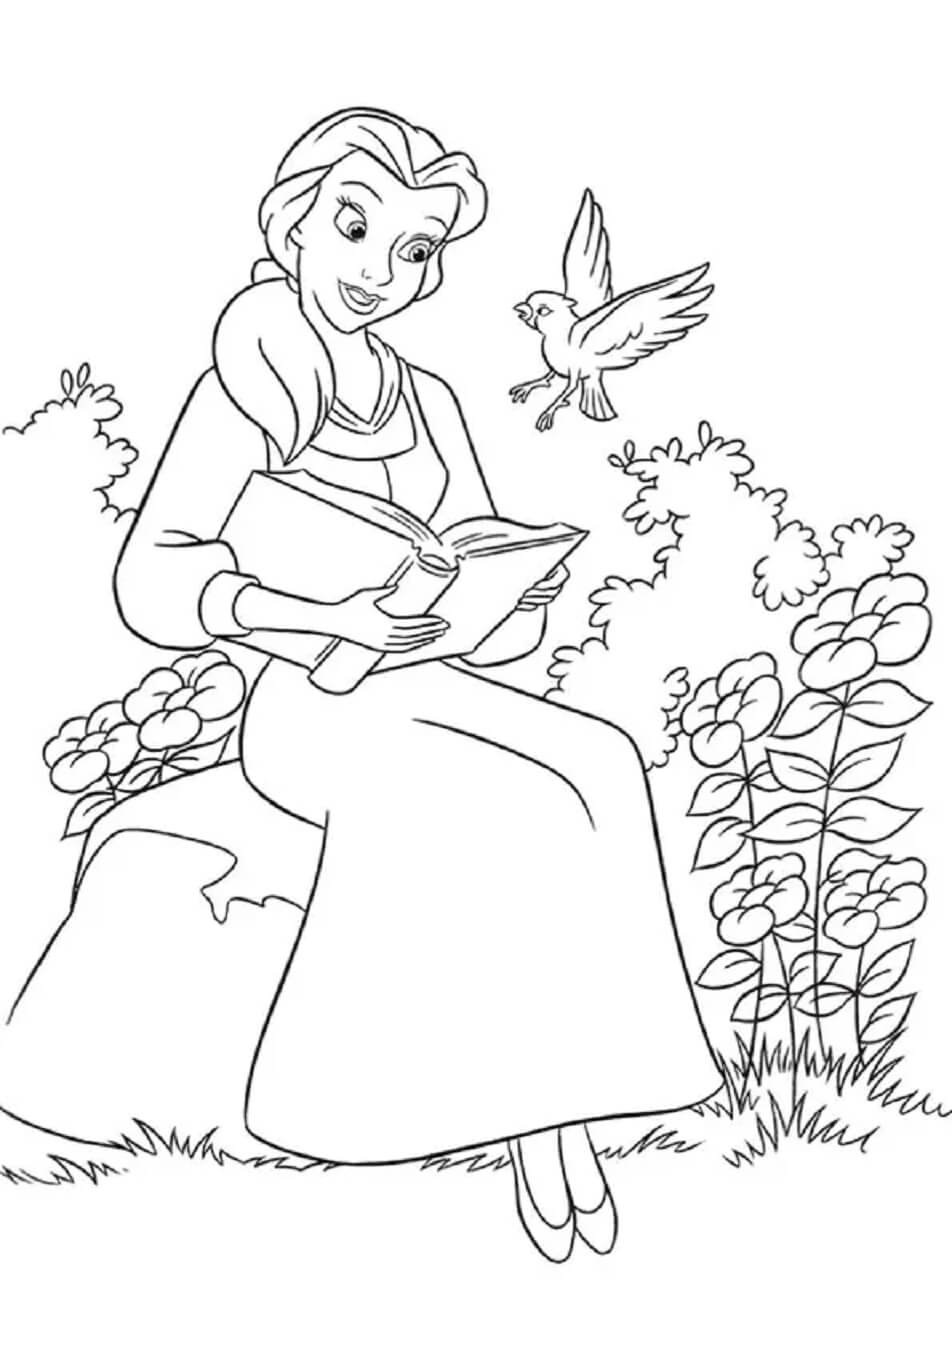 Belle Liest das Buch mit dem Vogel